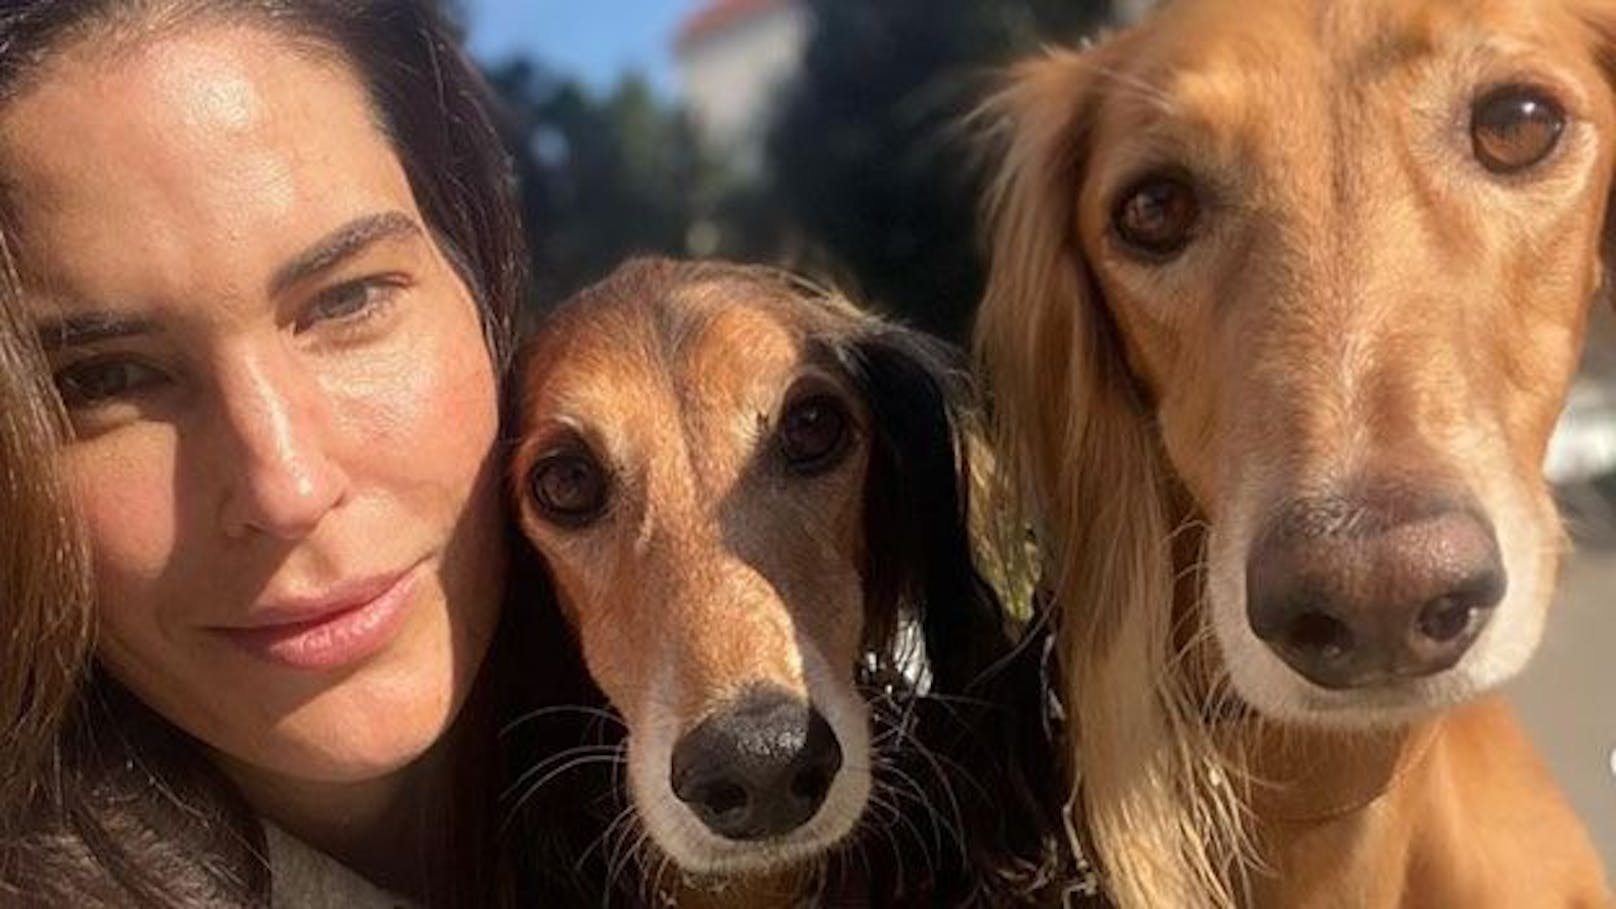 Moderatorin <strong>Elke Rock</strong> gedenkt ihrem Hund "Frederic" mit einem sehr bewegenden Instagram-Beitrag.